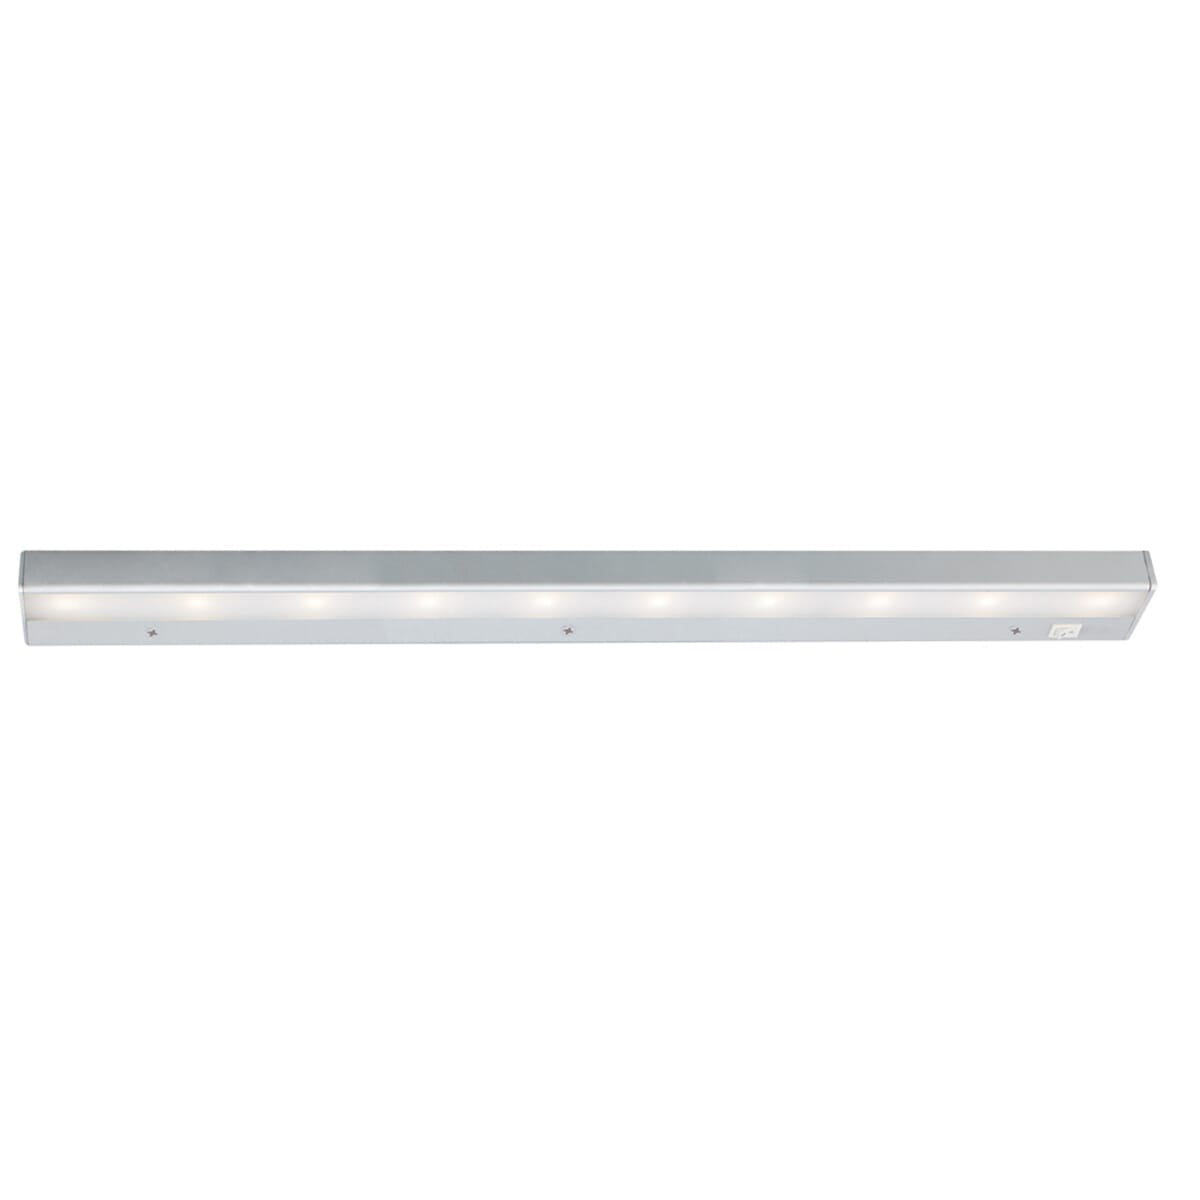 Satin Nickel WAC Lighting LEDme 8' 120V Light Bar 3000K Soft White BA-LED2-SN 